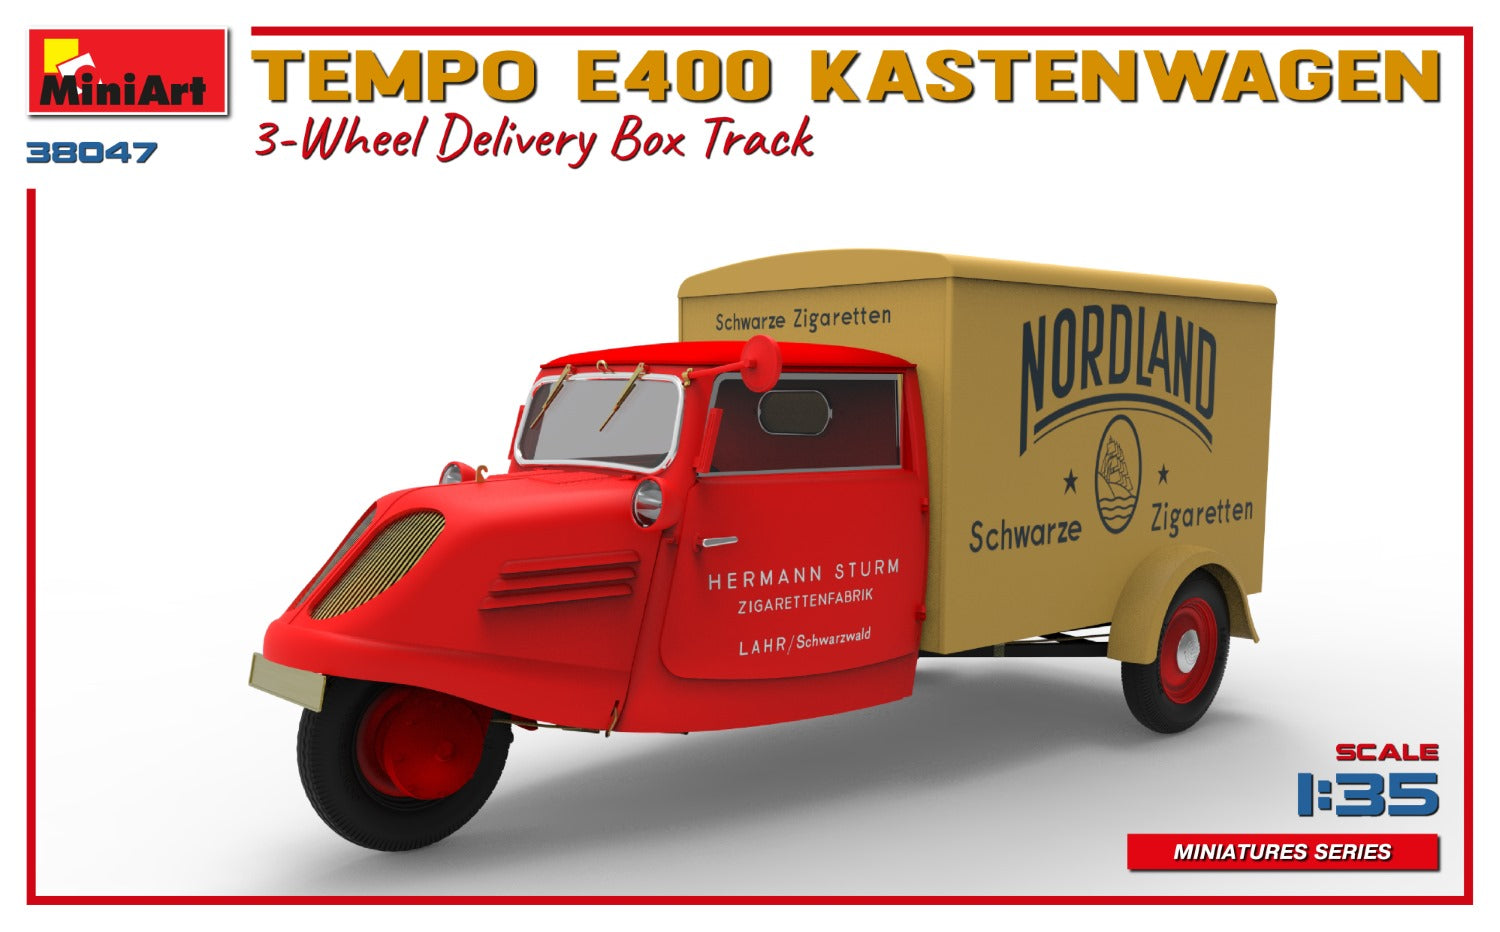 1:35 Miniart Tempo E400 Kastenwagen 3-Wheel Delivery Box Truck - MIA38047